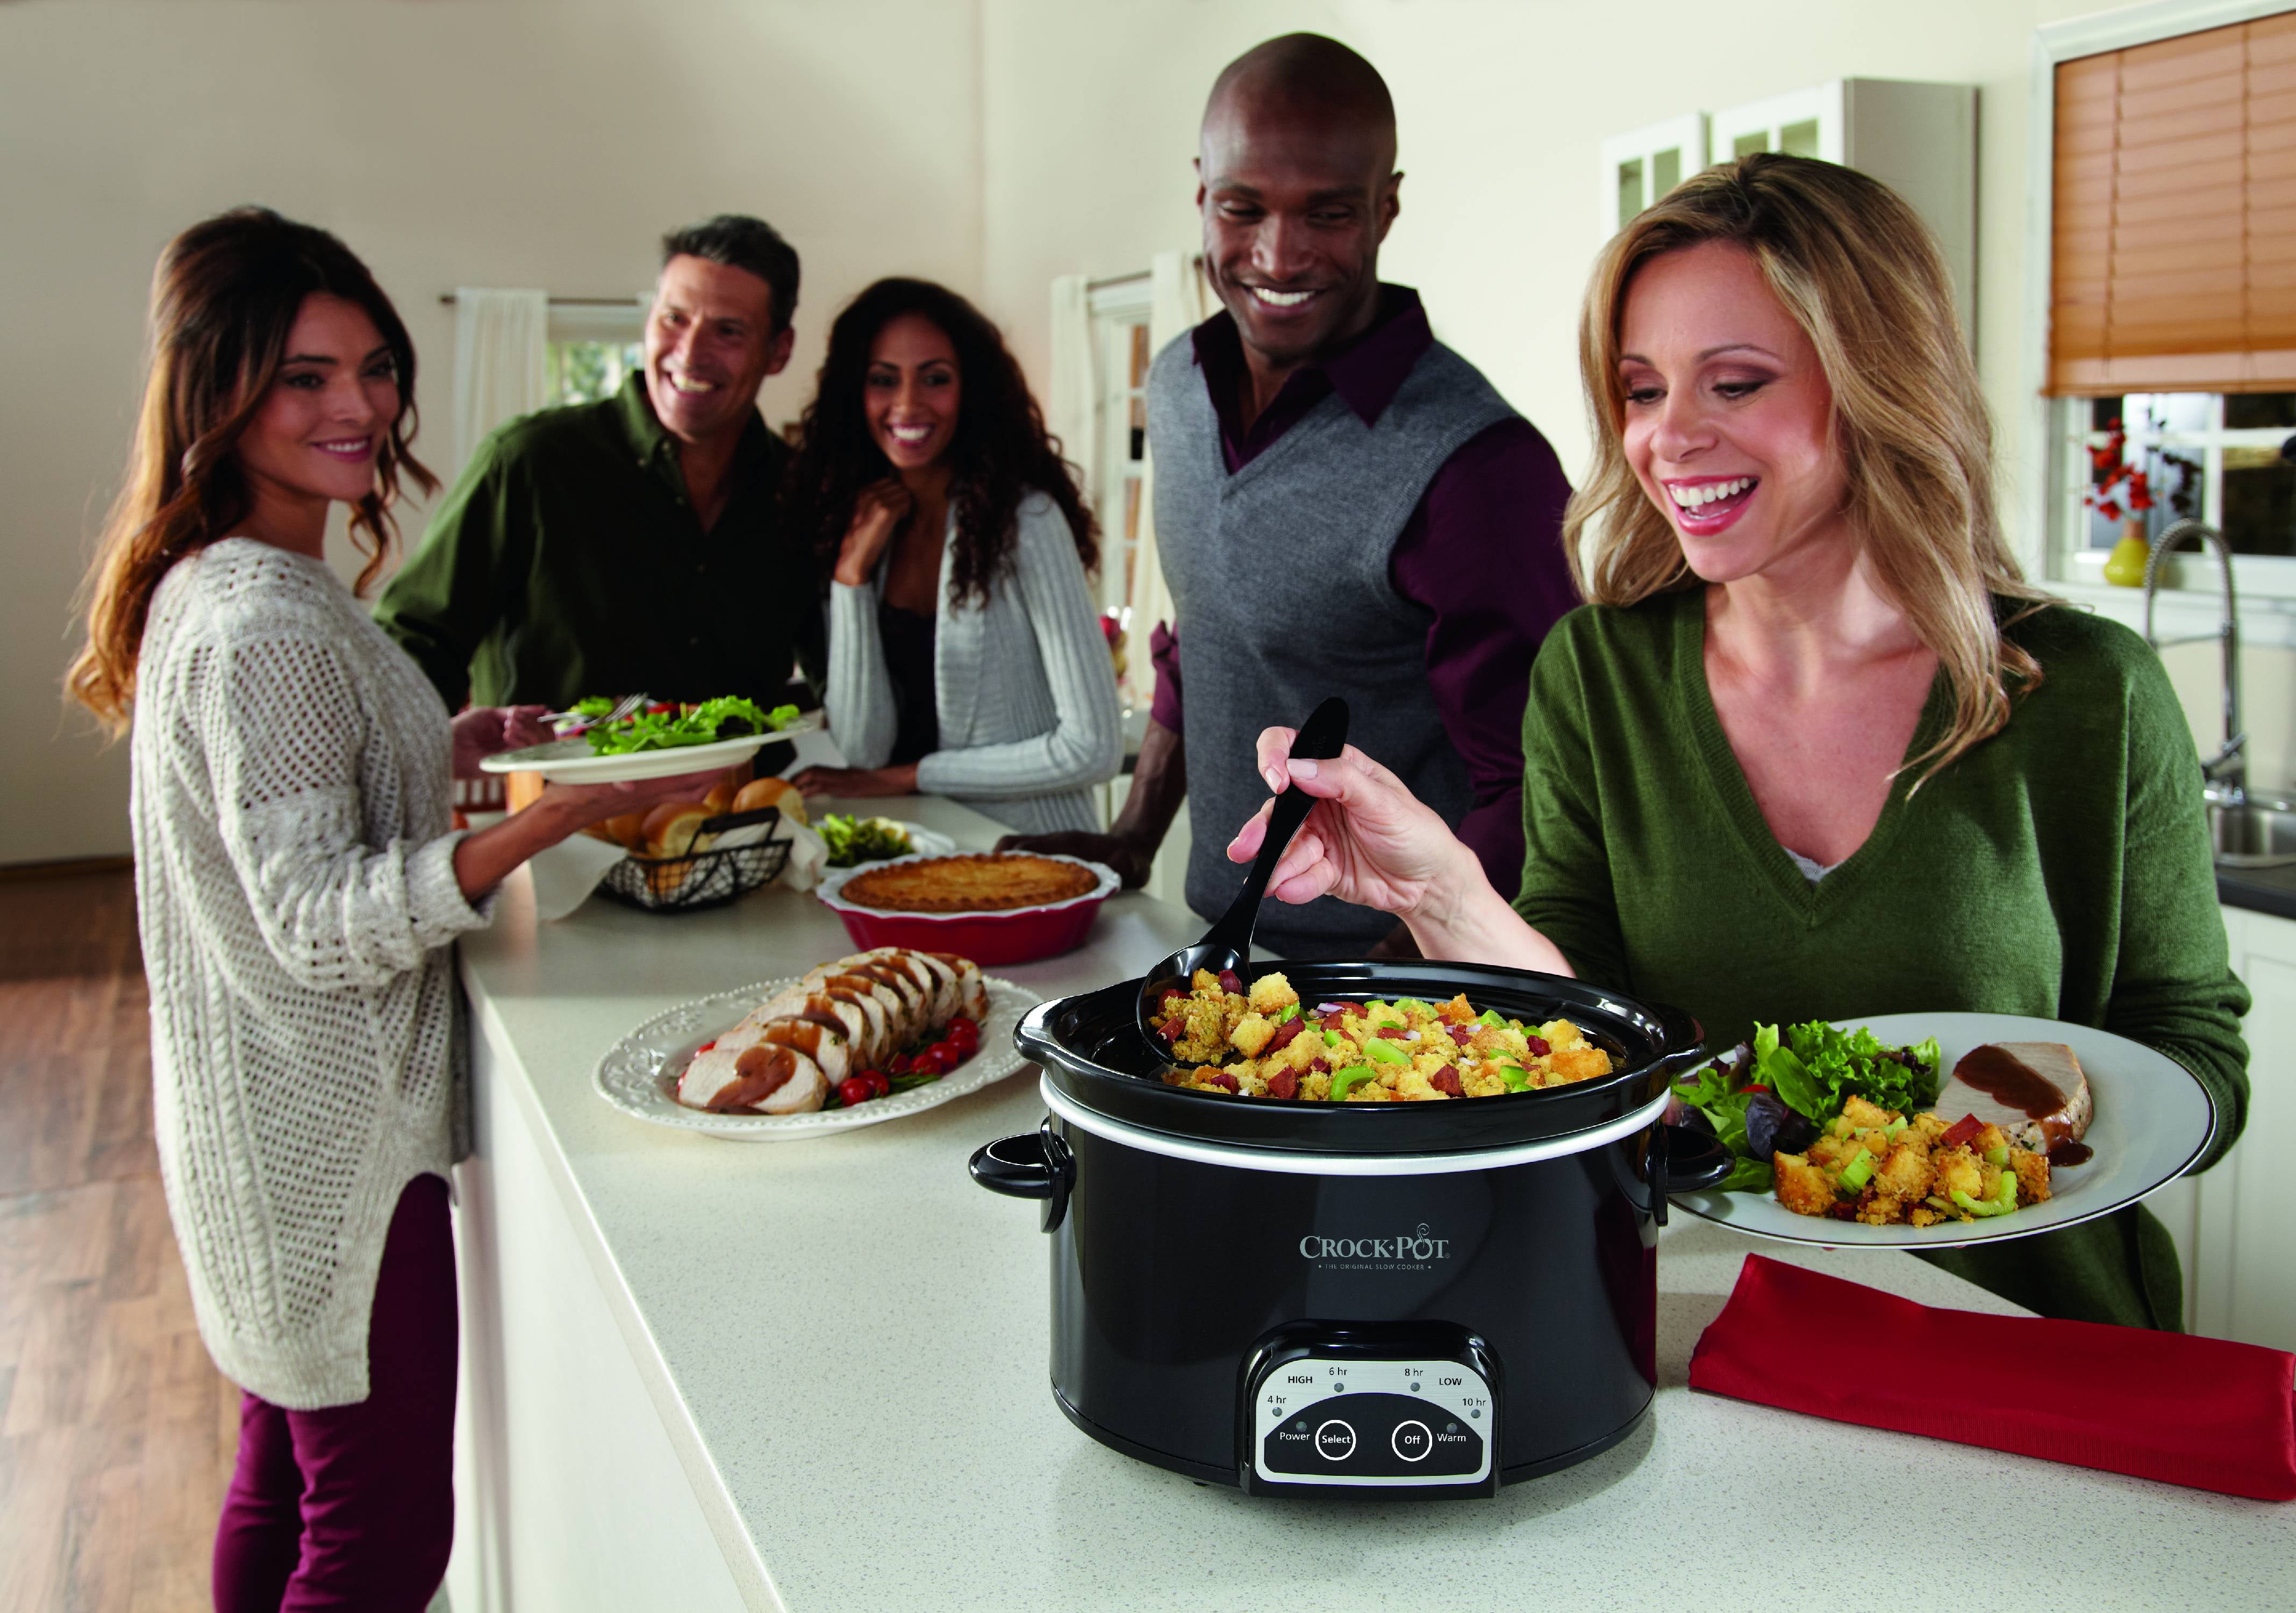 Crock Pot SCCPVP400-PY Smart-Pot 4-Quart Digital Slow Cooker 